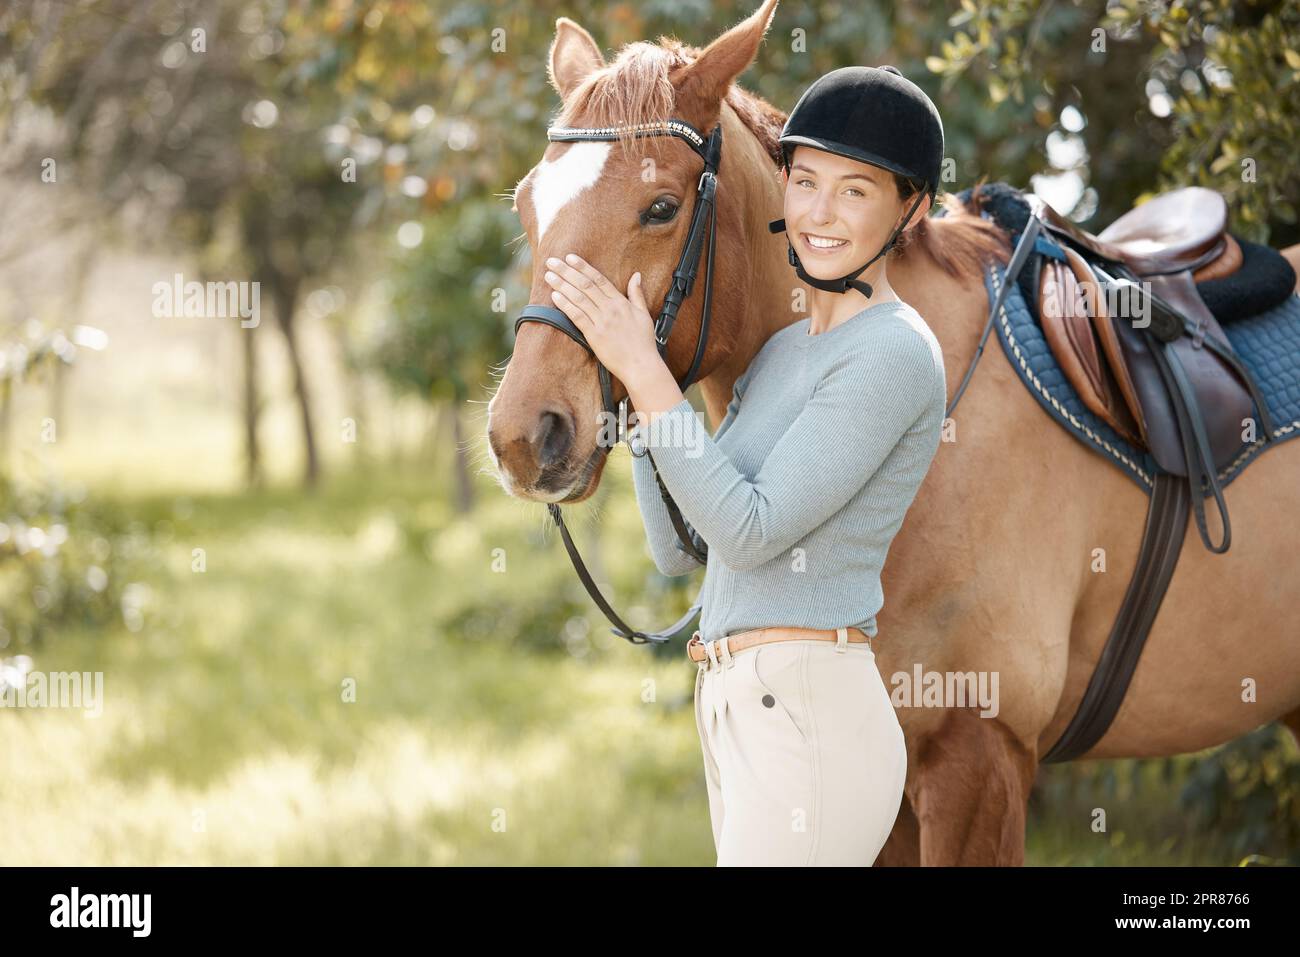 Les chevaux changent de vie. Une jeune femme attrayante debout avec son cheval dans une forêt. Banque D'Images